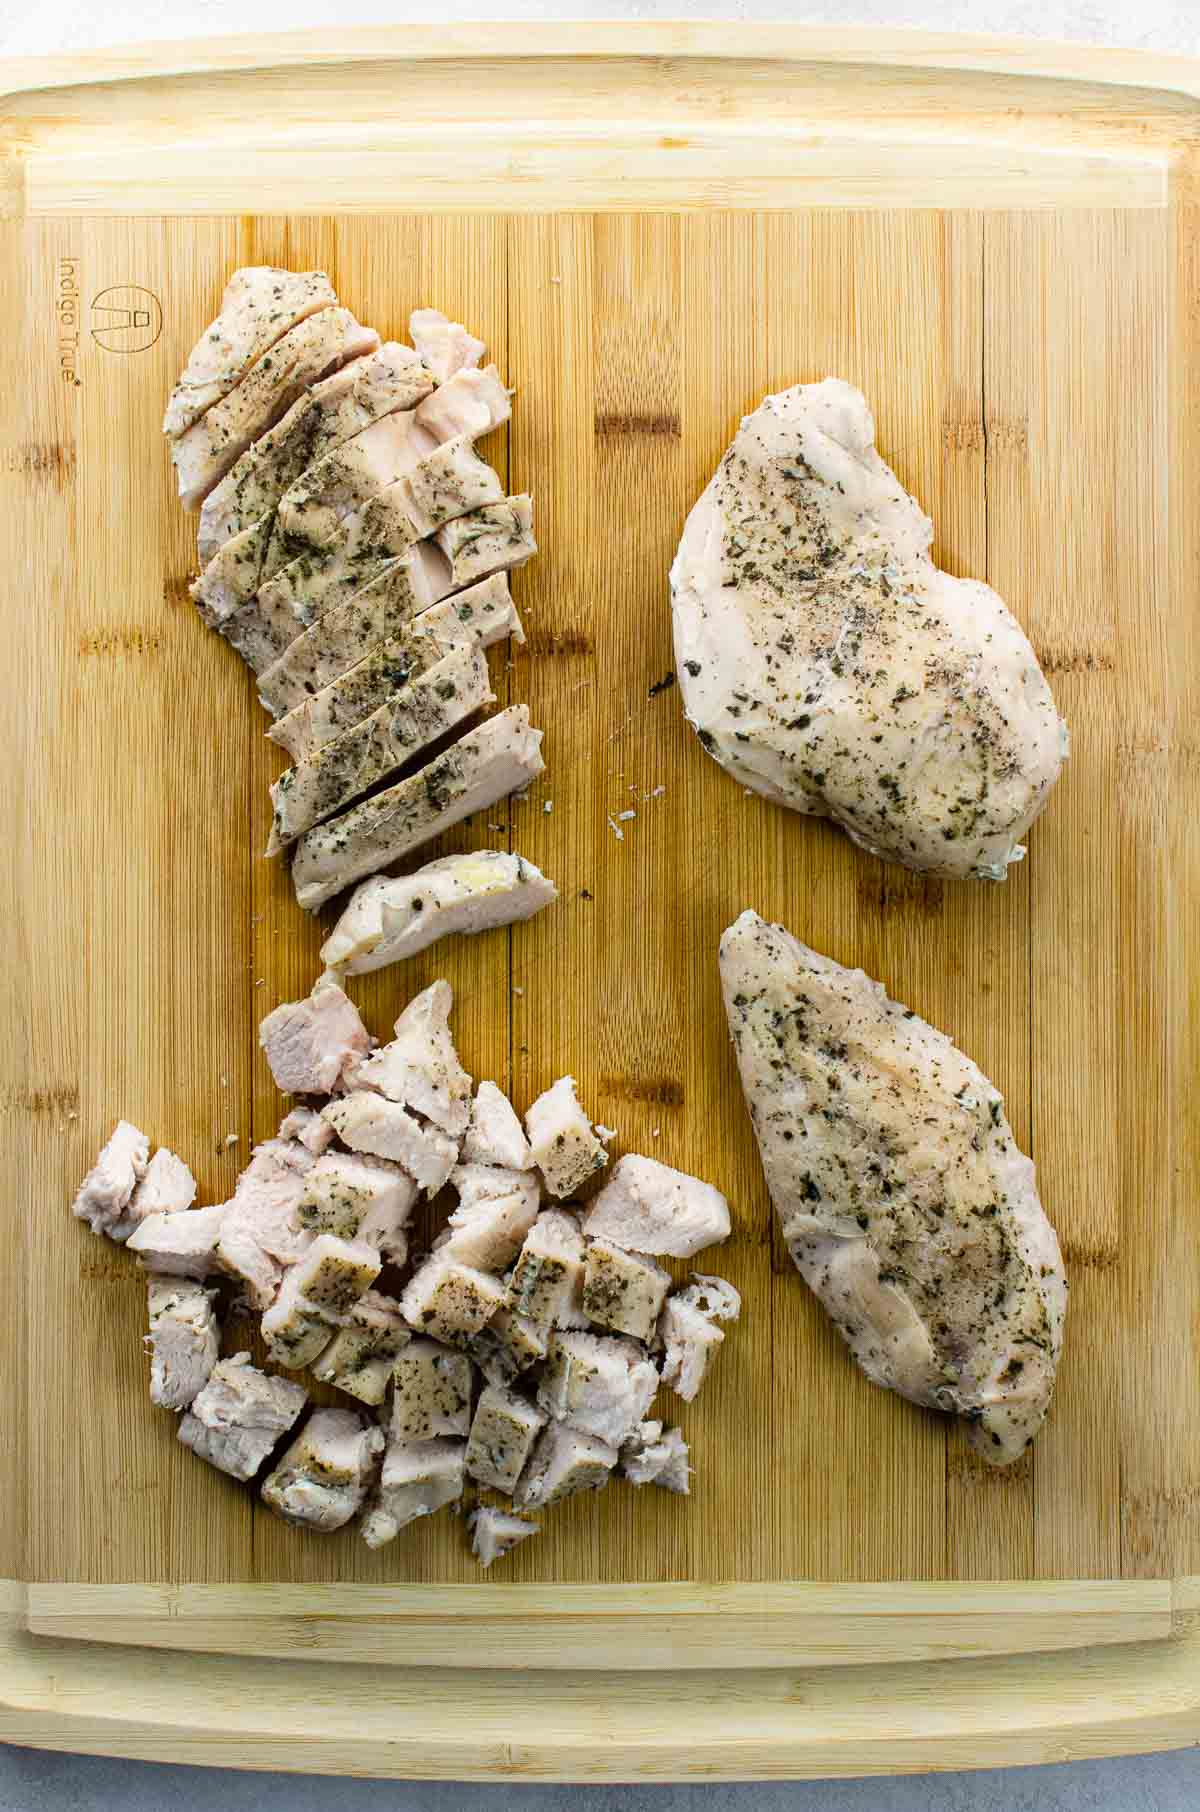 sous vide boneless chicken breast on a cutting board